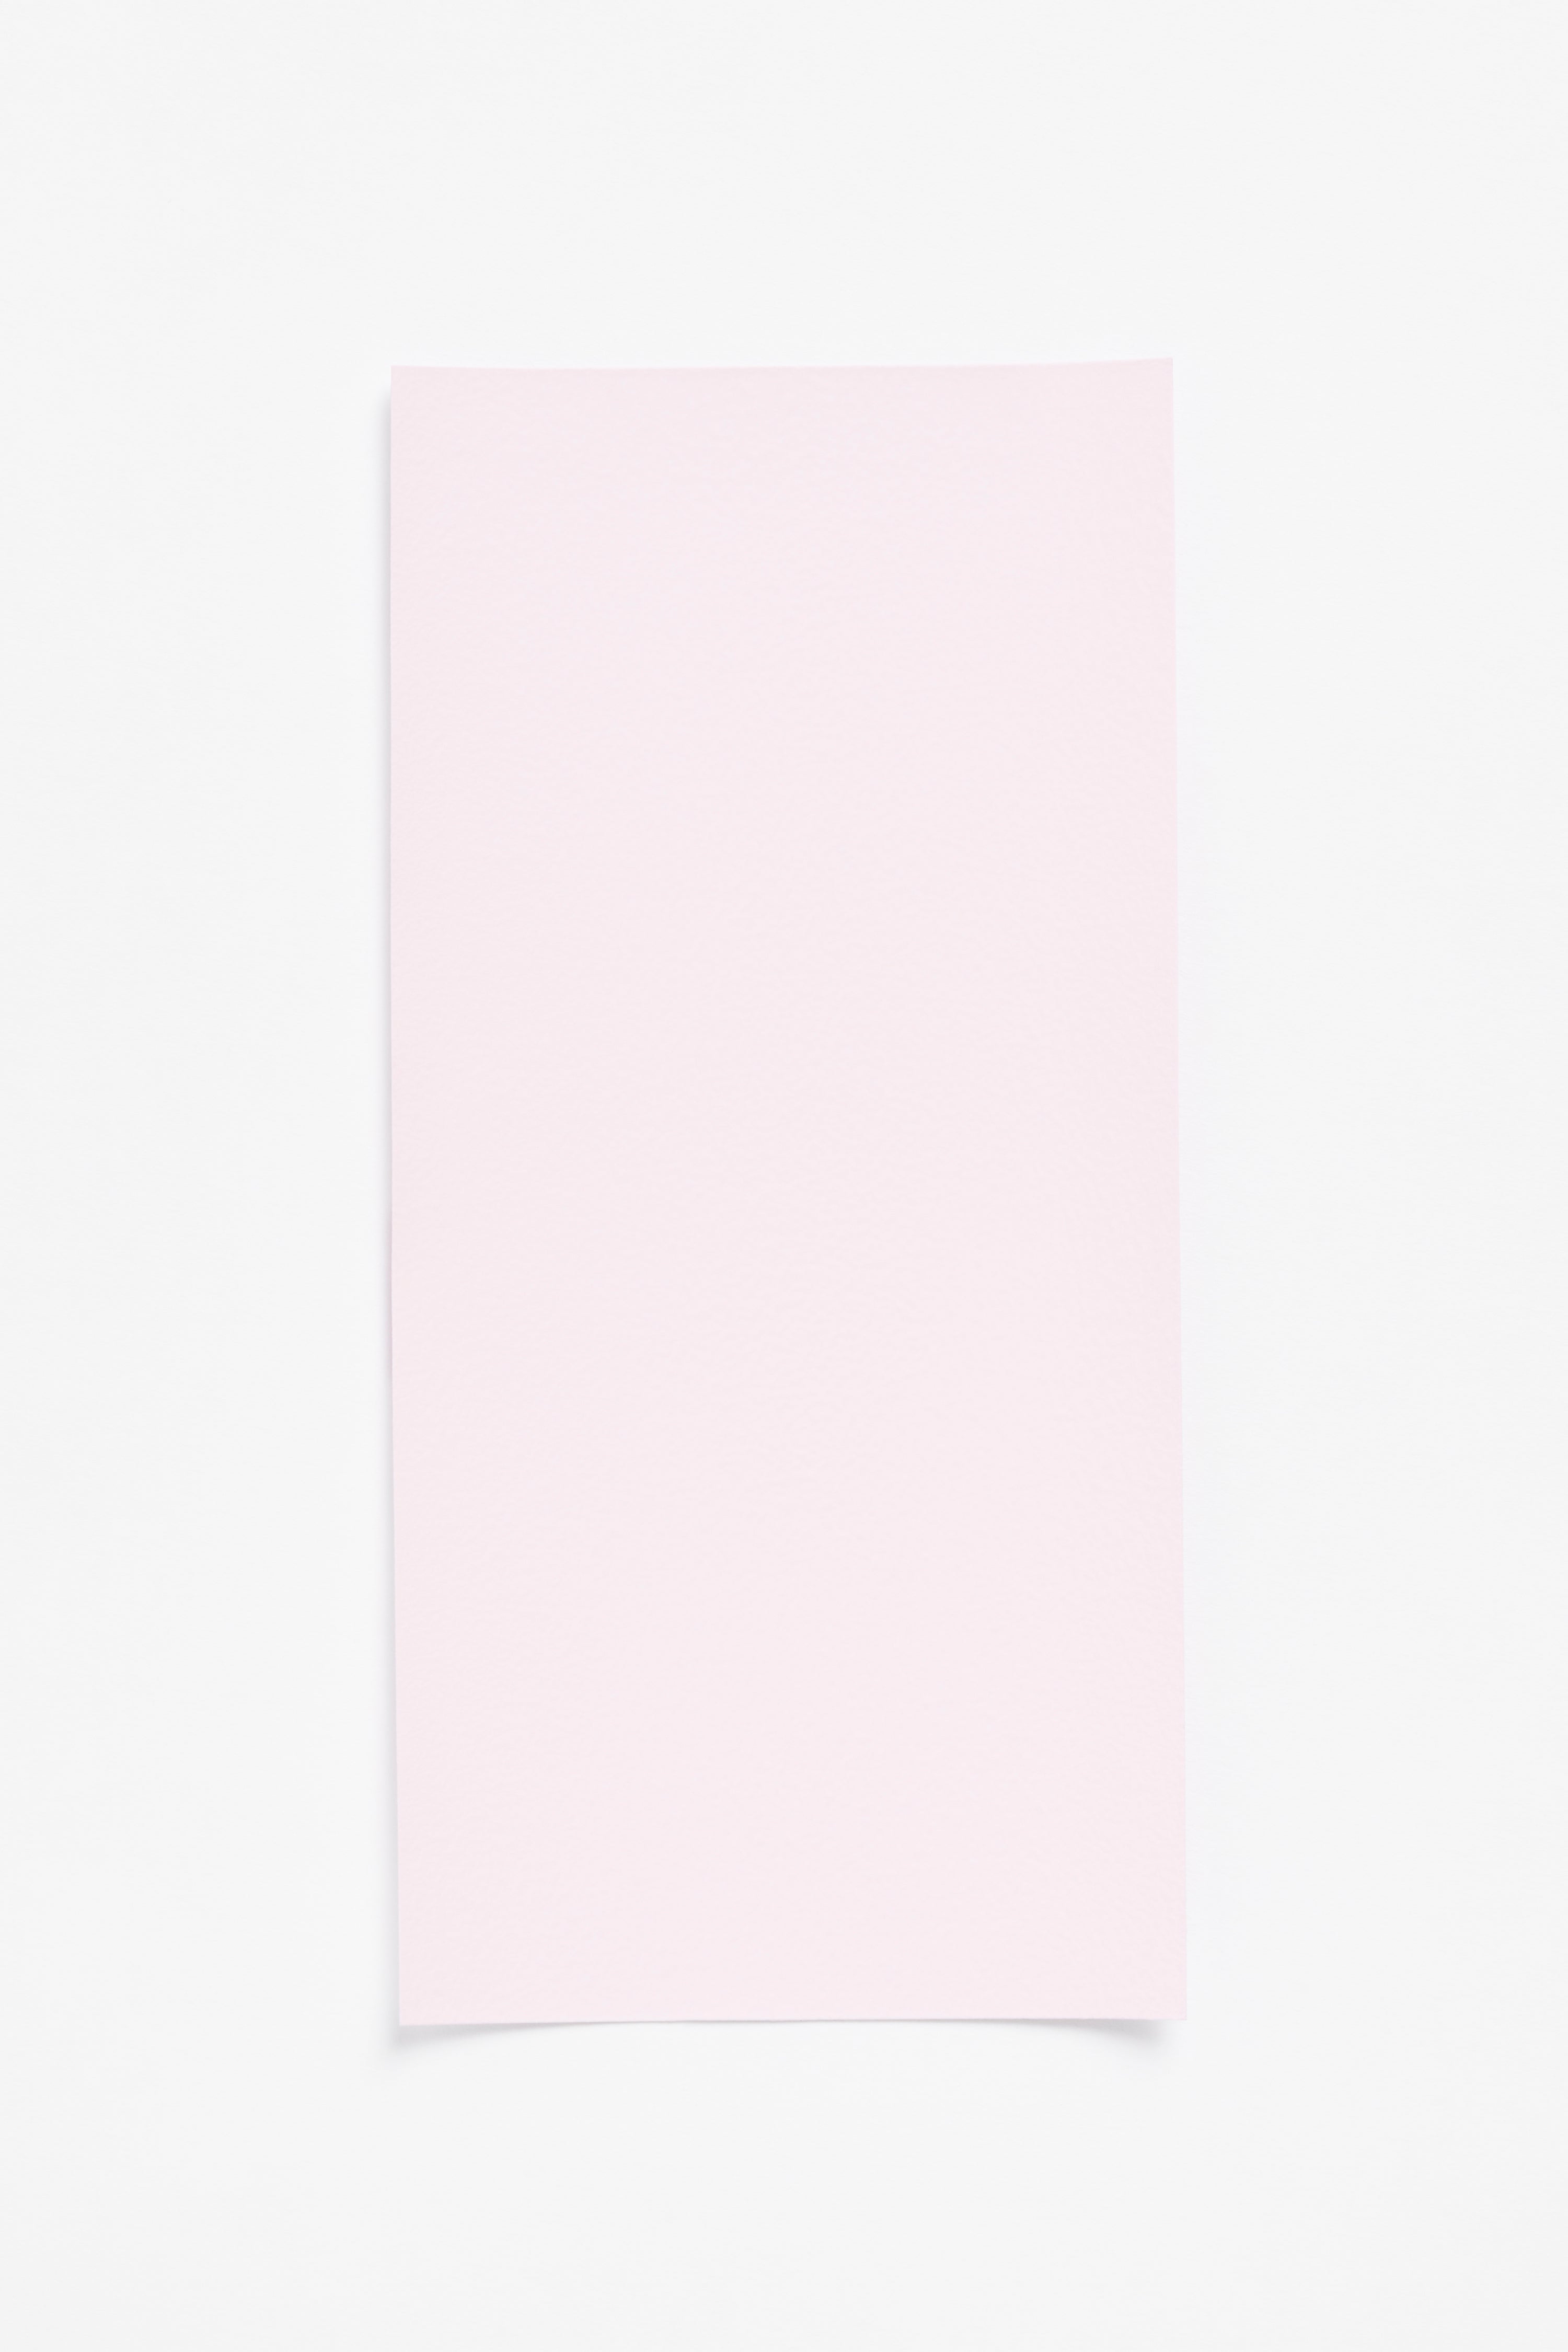 Ulanda Pink — a paint colour developed by Cecilie Bahnsen for Blēo